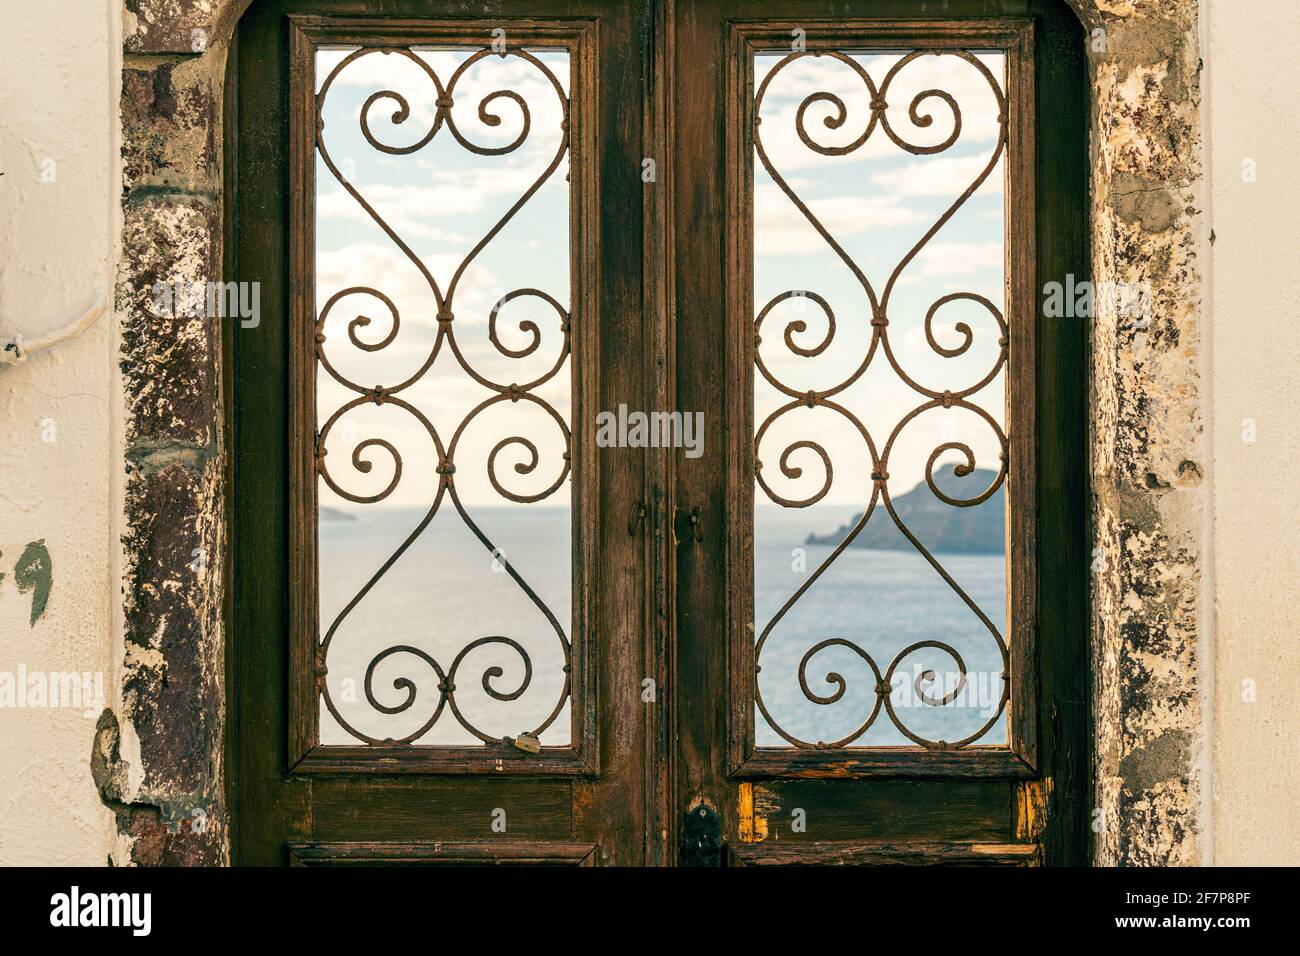 Architecture of doors of Oia village on Santorini island, Greece Stock Photo